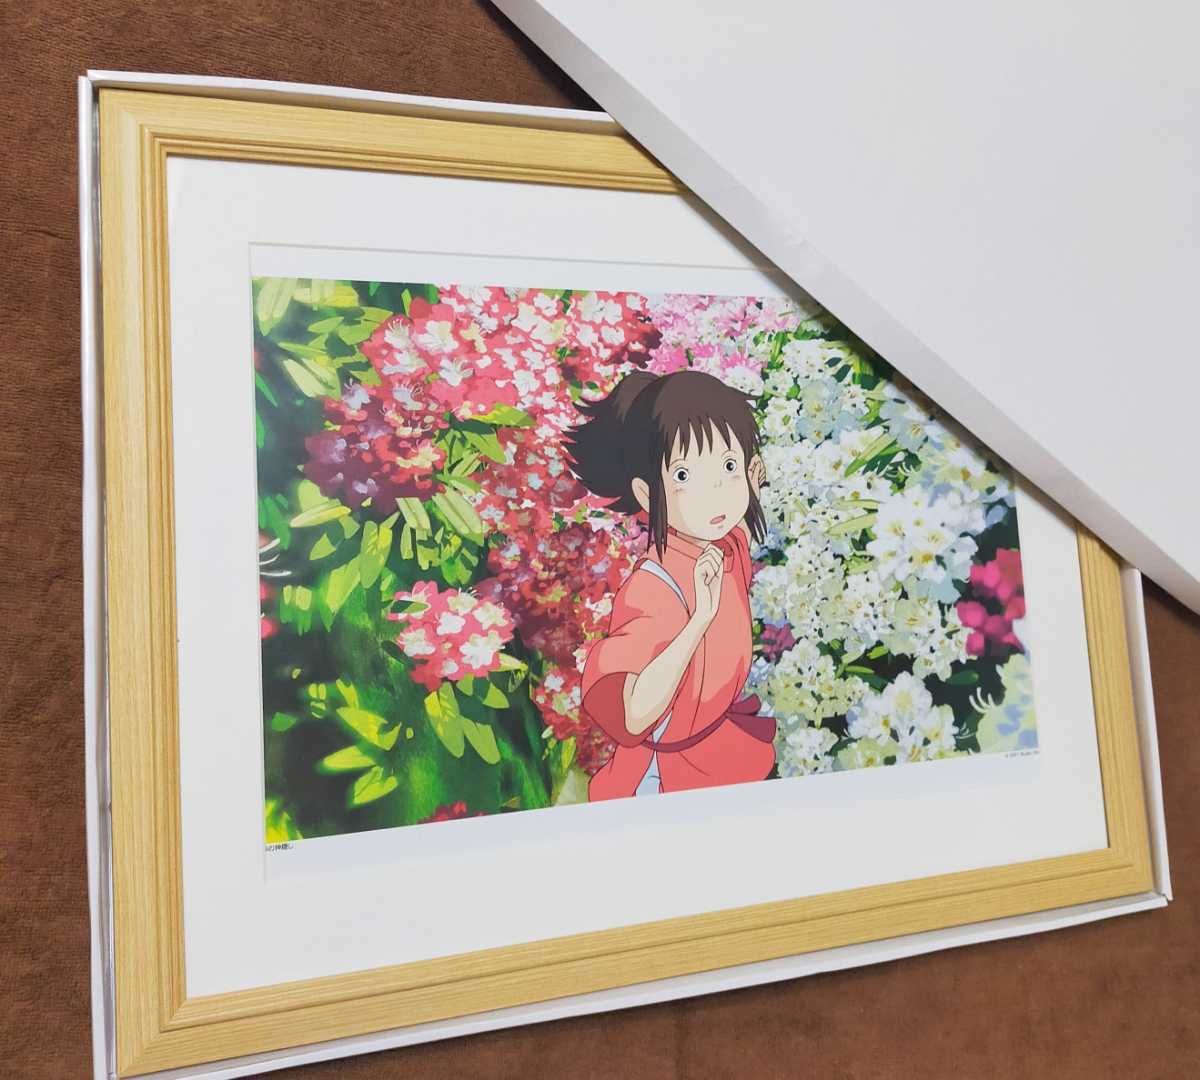 Studio Ghibli Le Voyage de Chihiro [Article encadré] Inspection de l'affiche Ghibli) Reproduction de peinture Ghibli Carte postale originale. Calendrier Ghibli. Hayao Miyazaki GHIBLI, des bandes dessinées, produits d'anime, autres